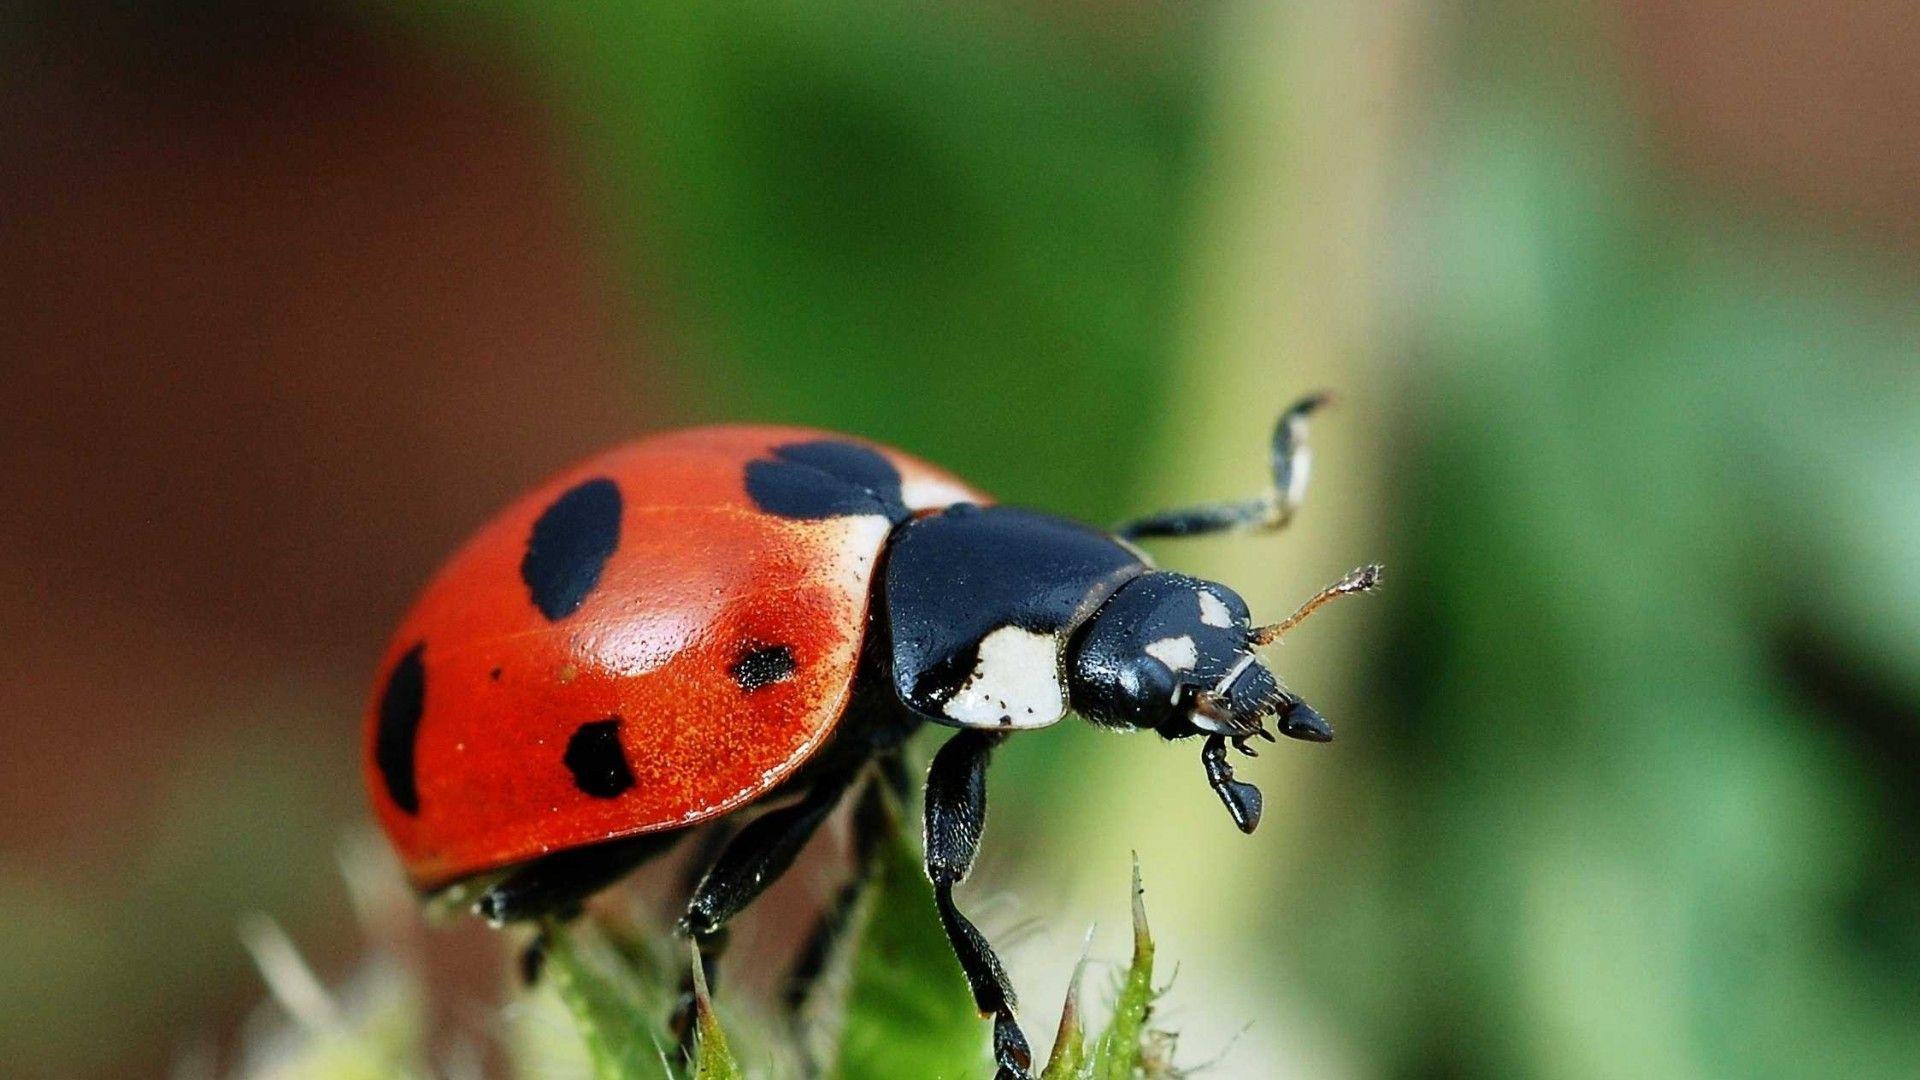 Close Up Ladybird